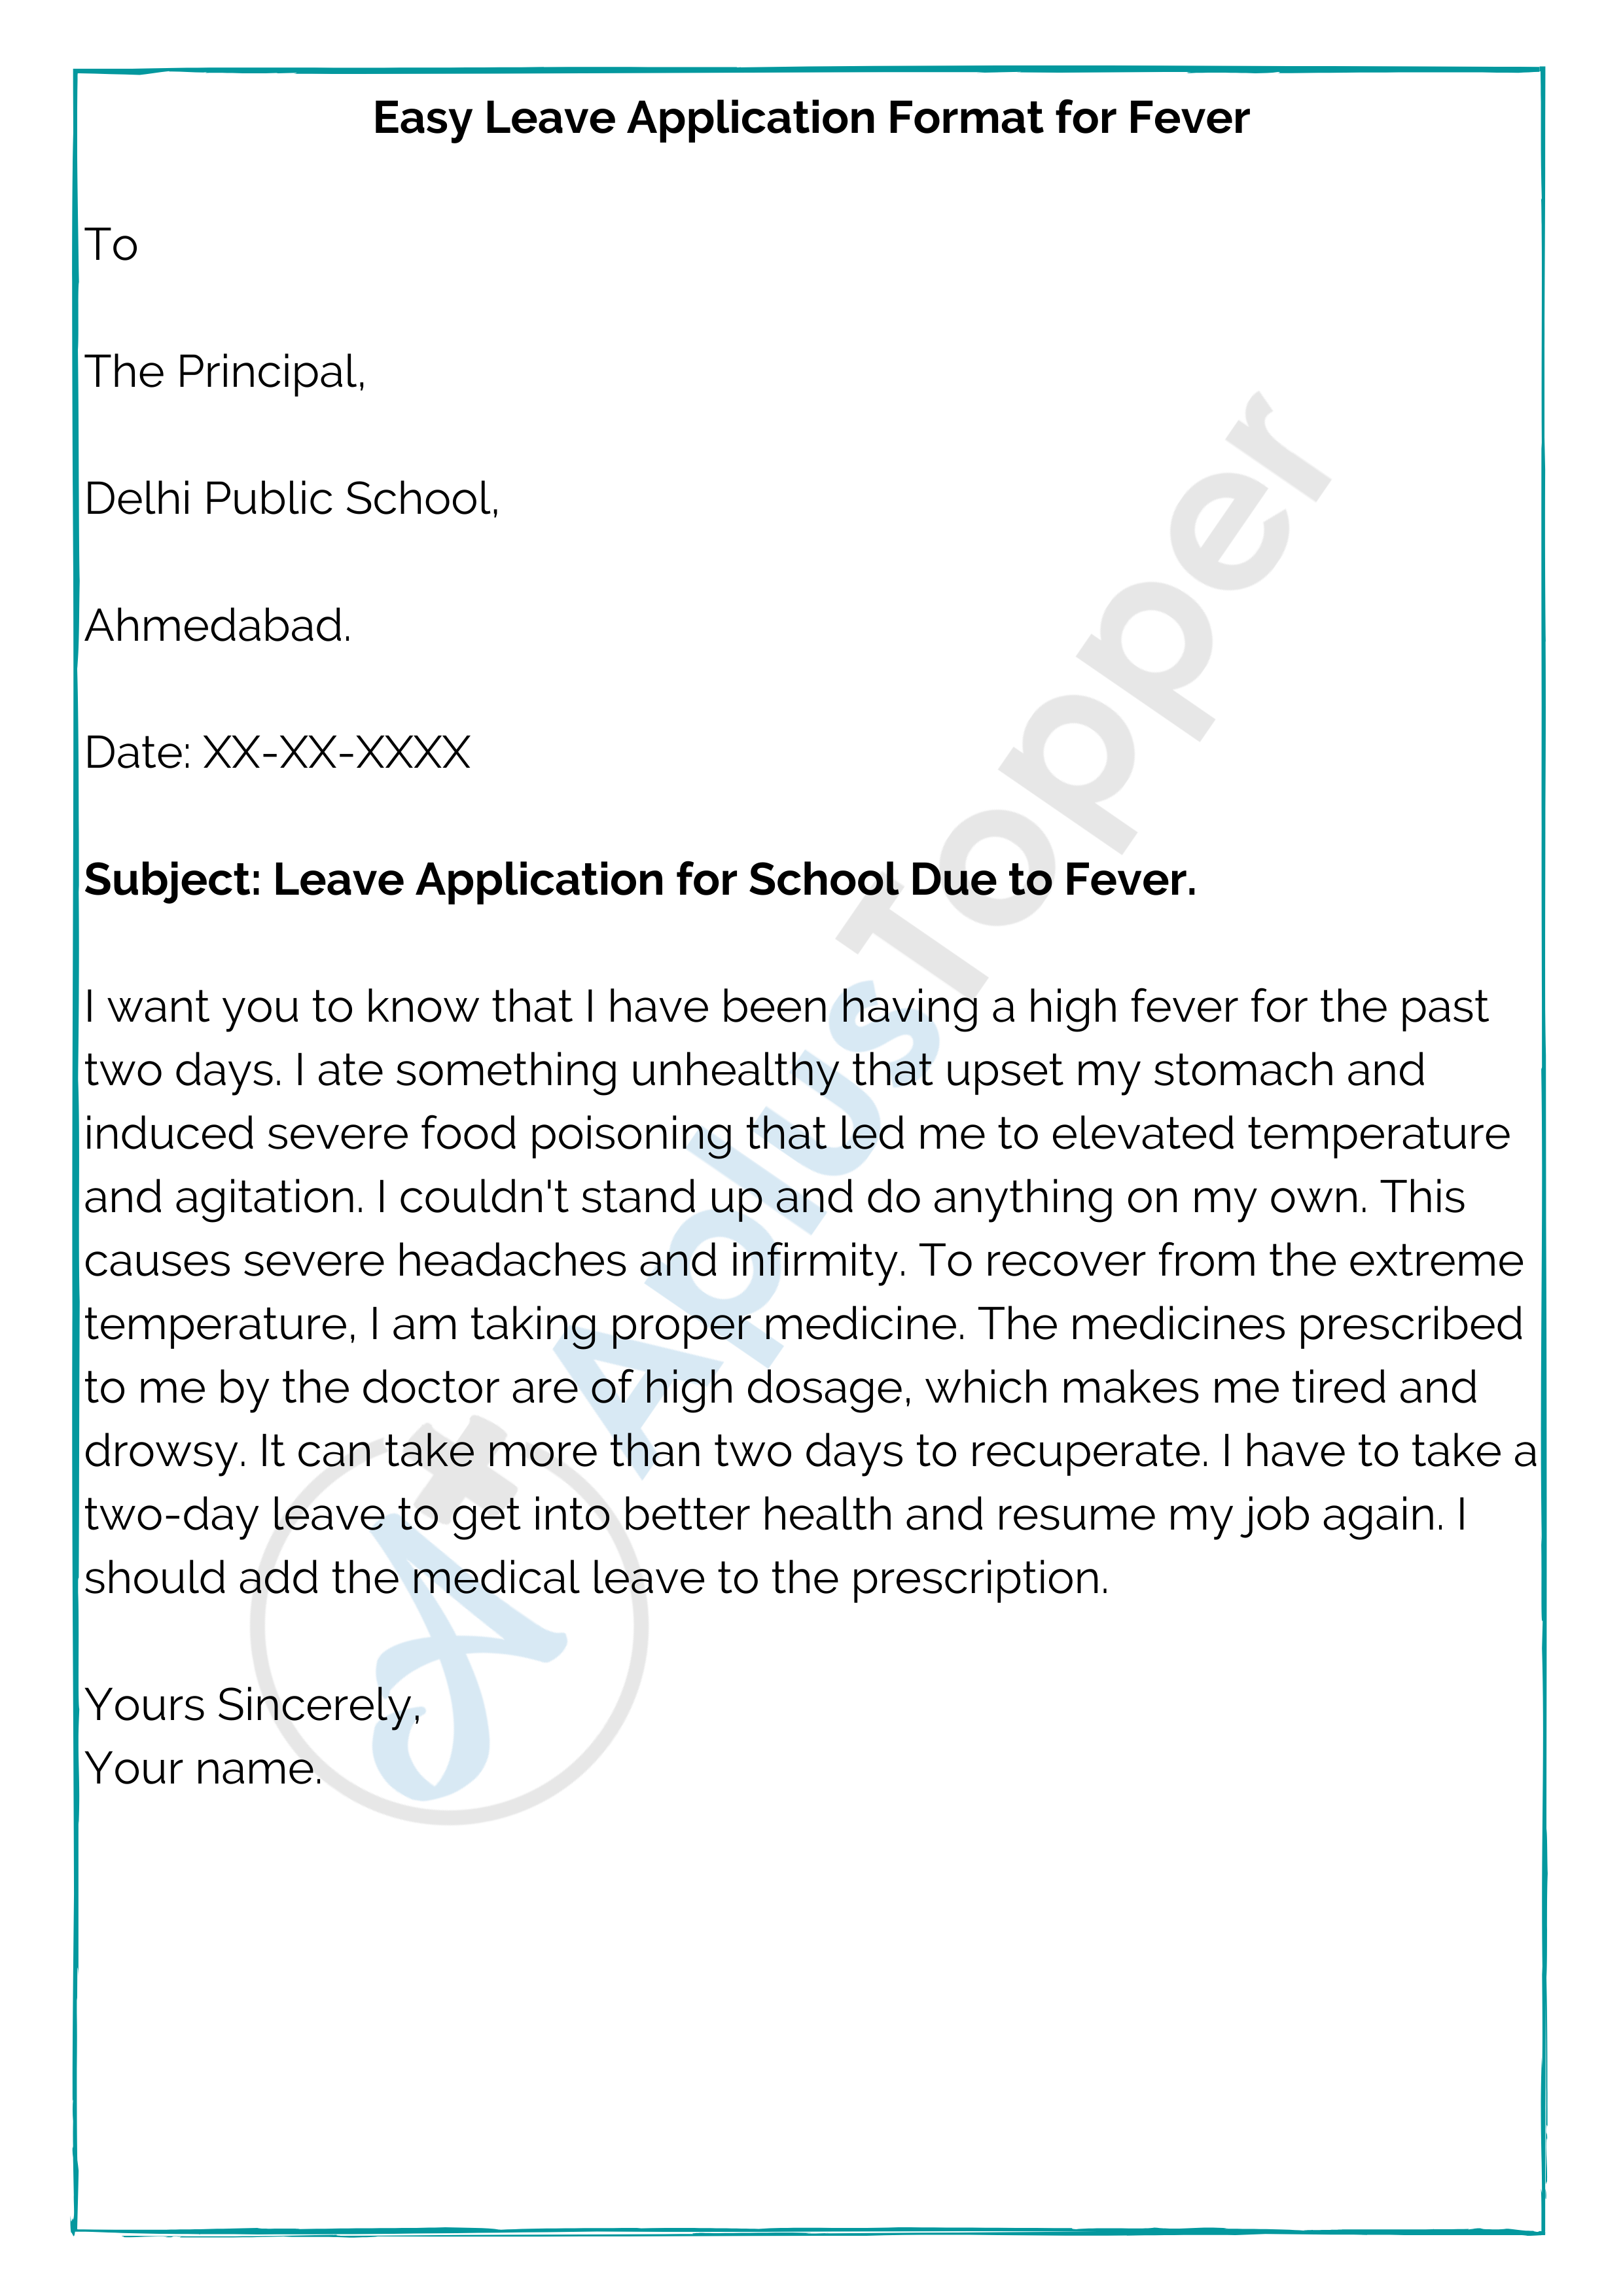 application letter to teacher for fever